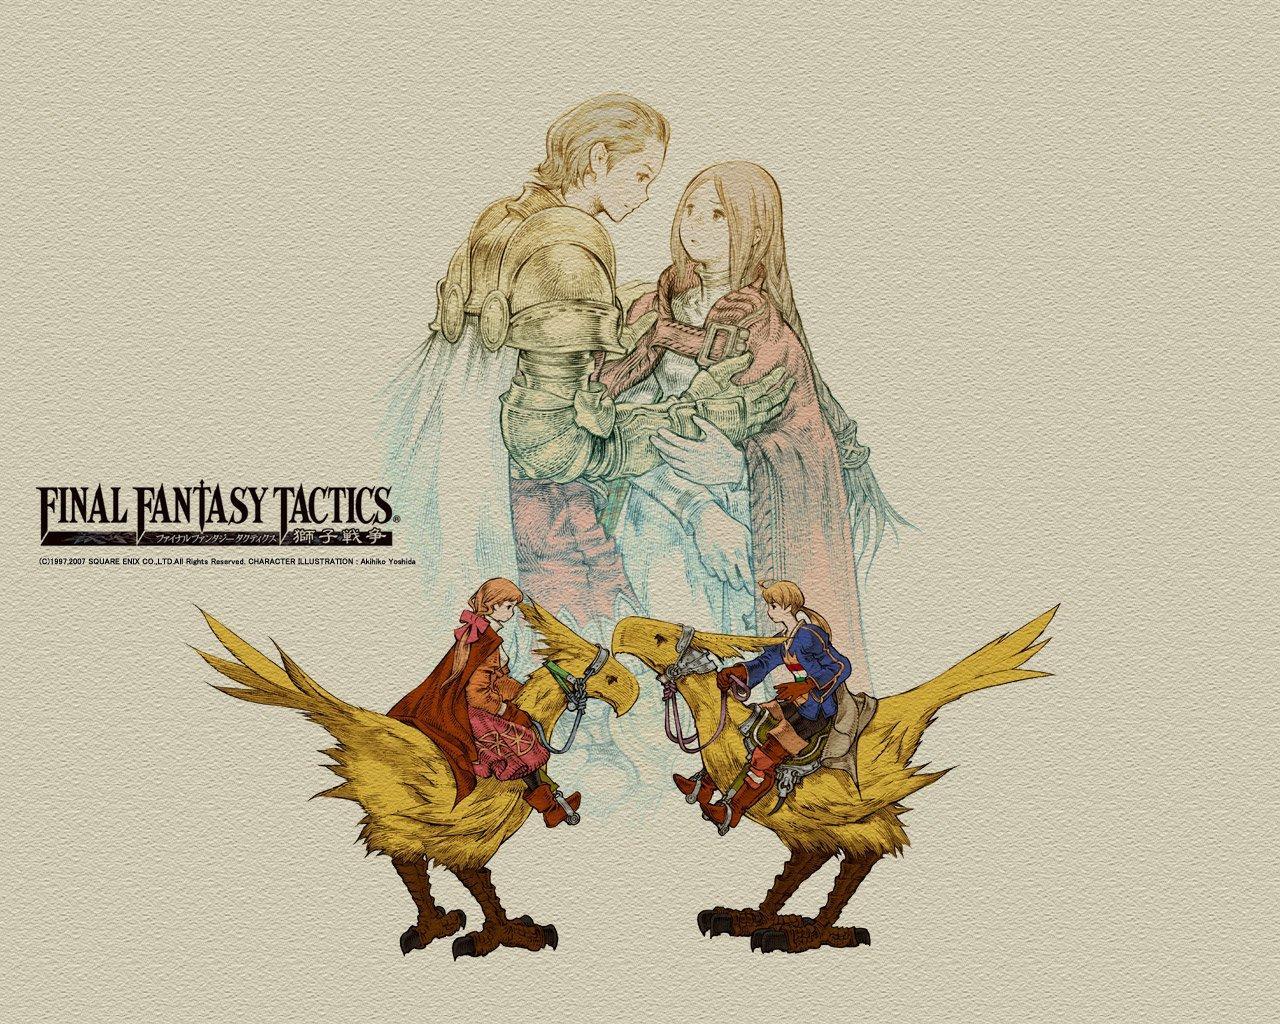 Final Fantasy Tactics Wallpaper 4k Download, Final Fantasy Tactics, Game